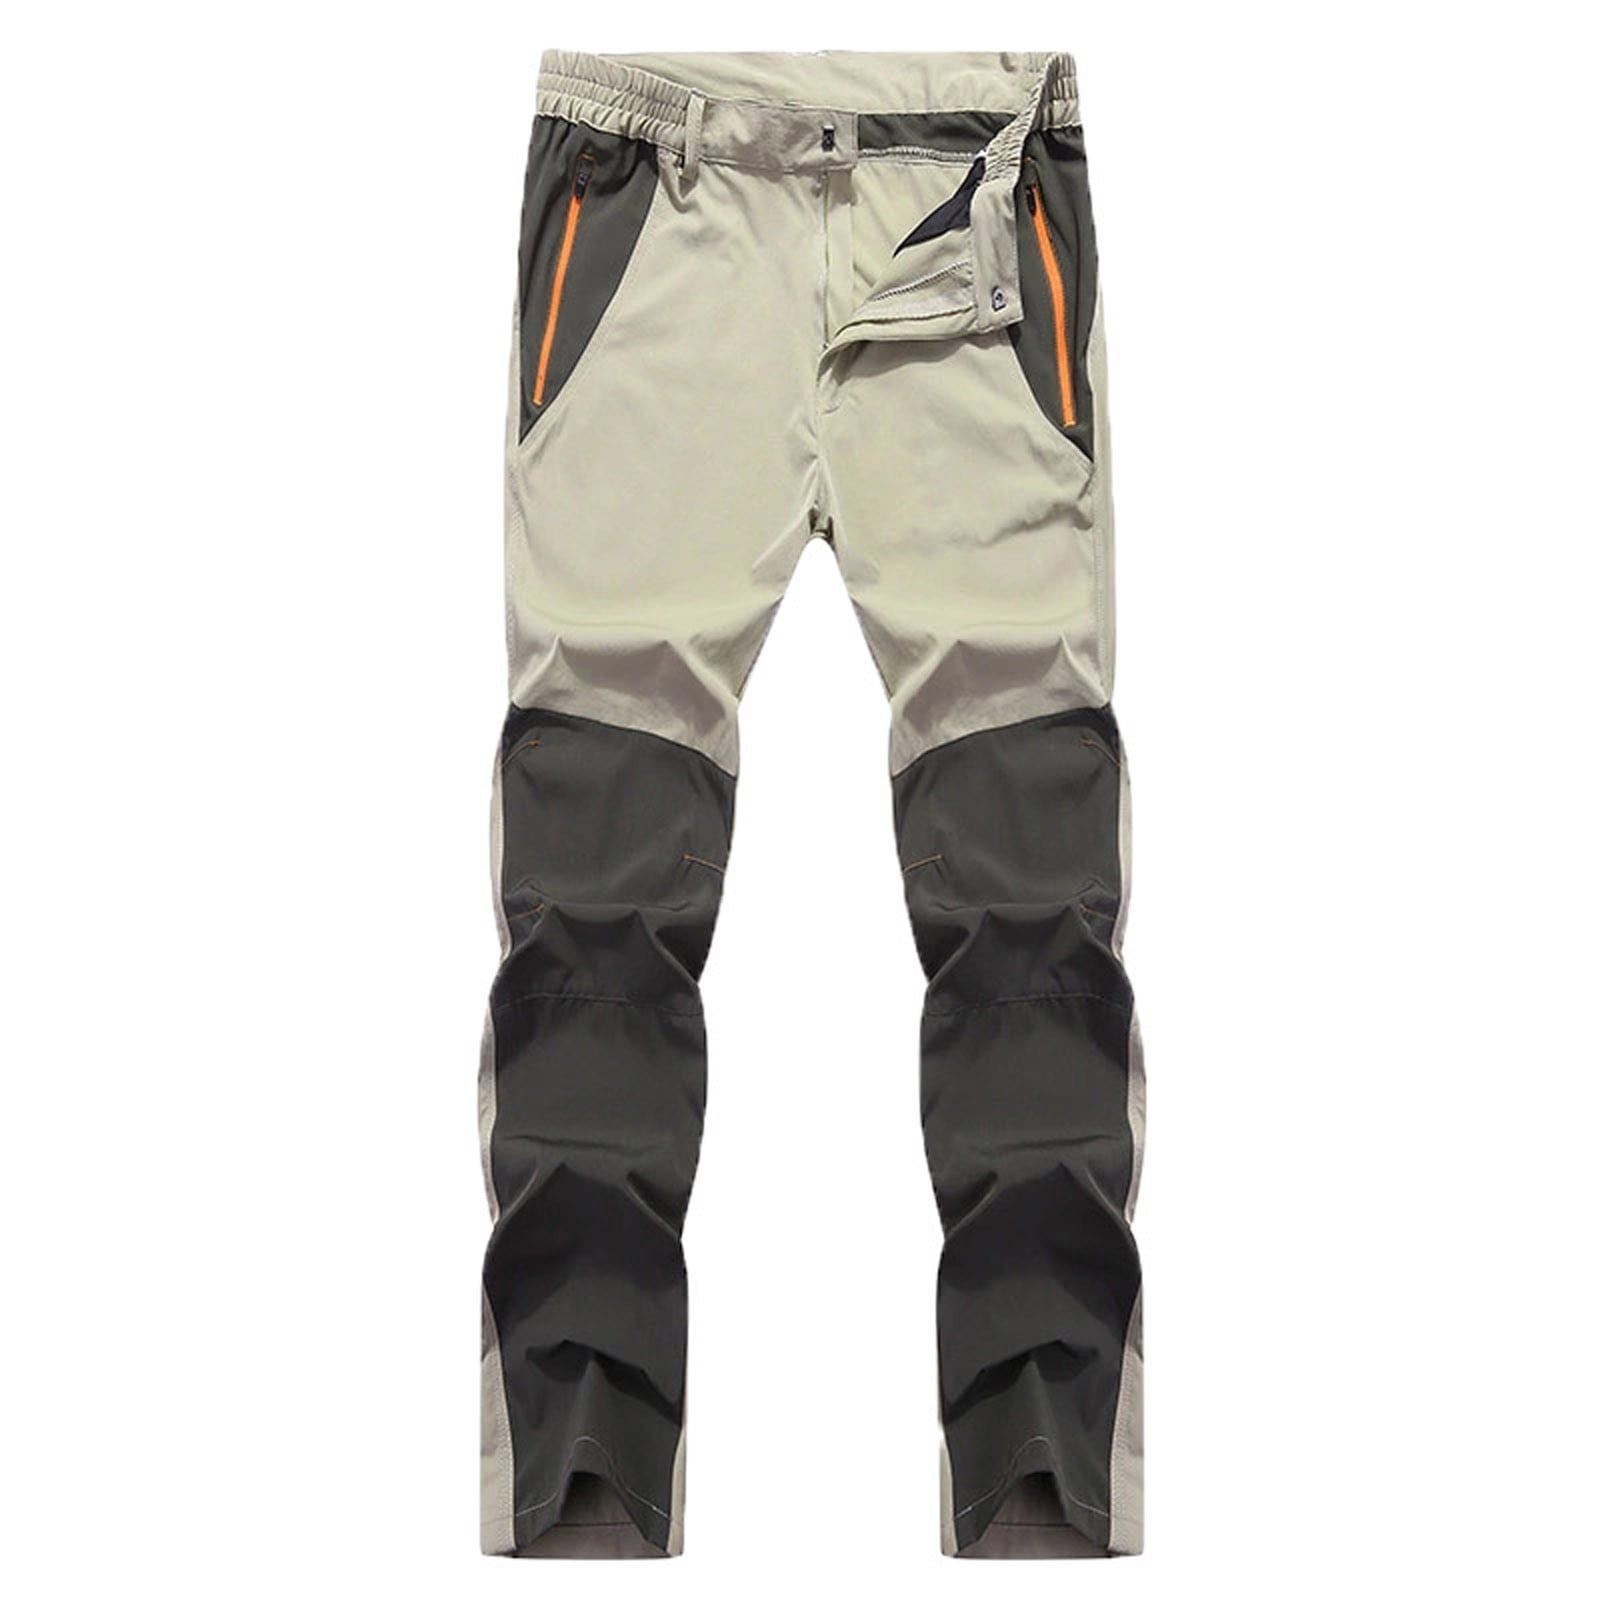 JMIERR Men's Hiking Cargo Pants - Lightweight Waterproof Quick Dry